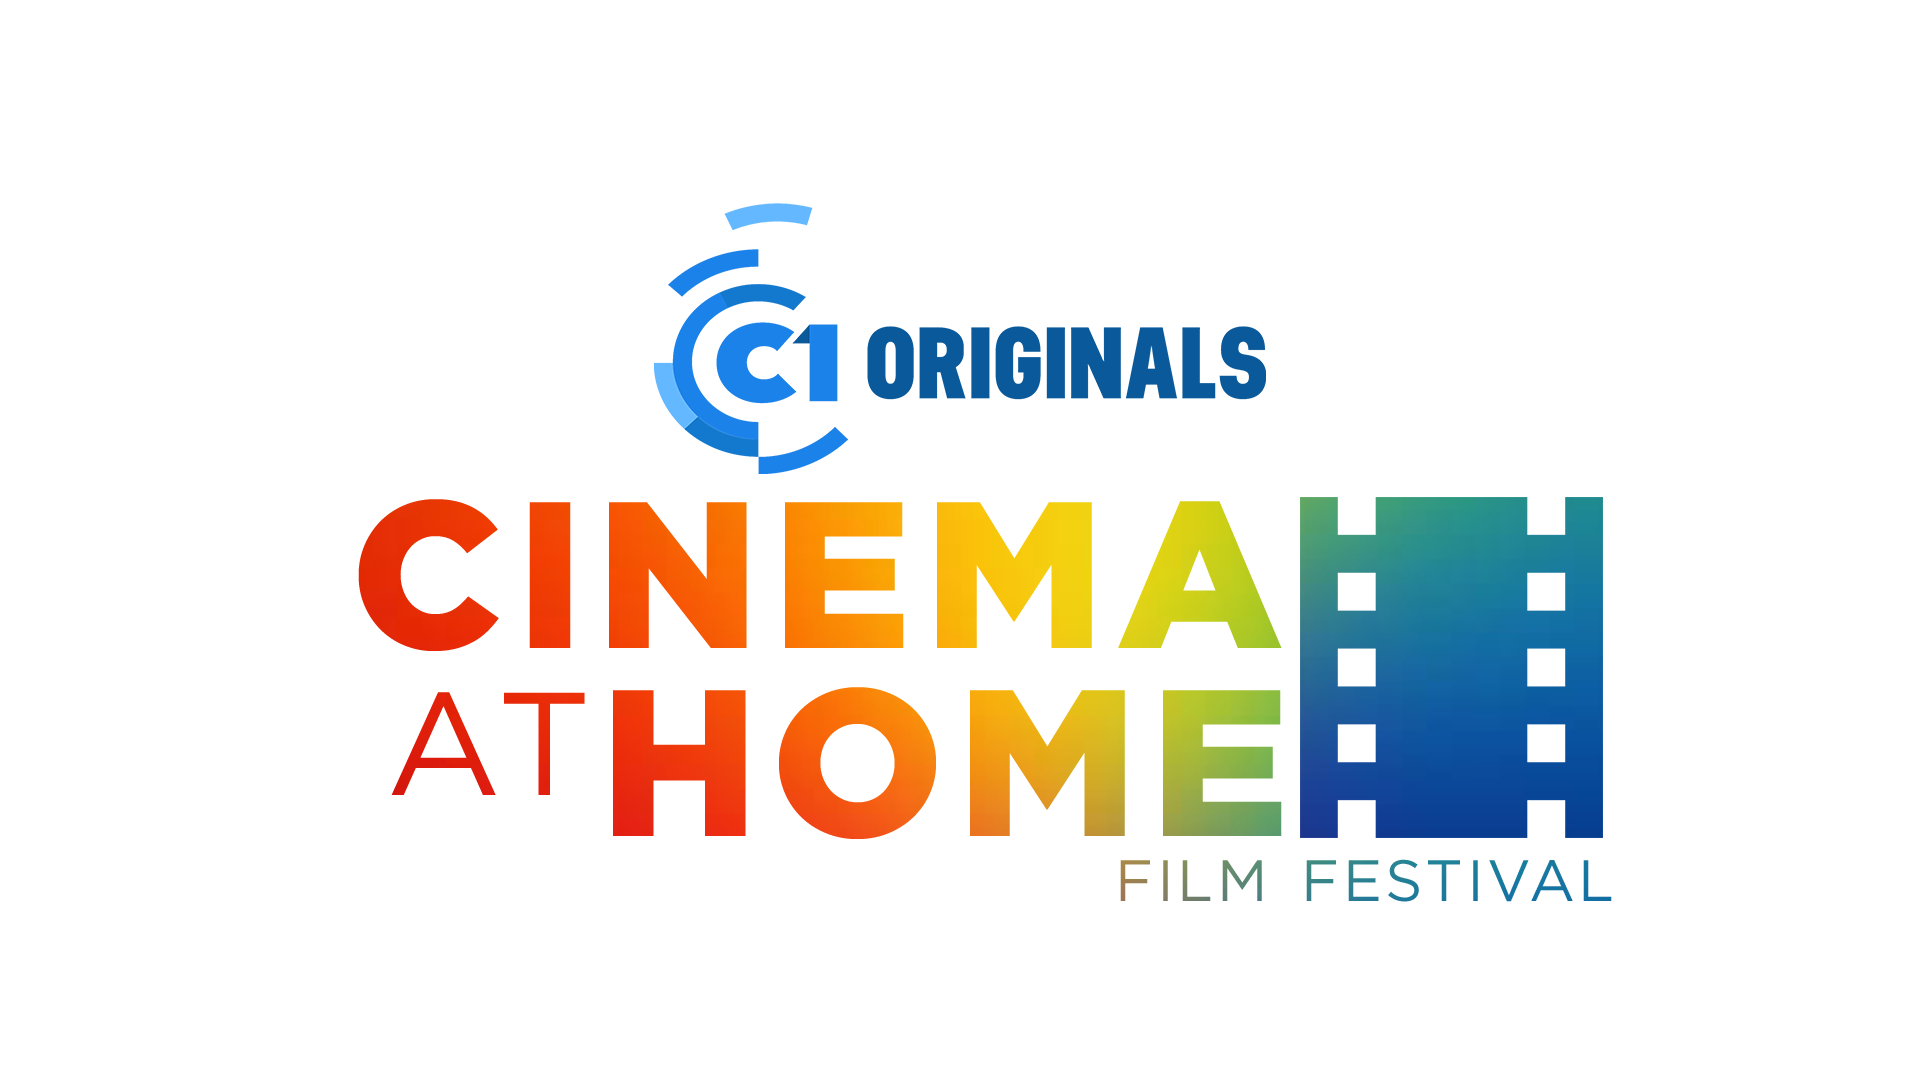 C1 Originals celebrates pride month in virtual film fest "Cinema At Home"